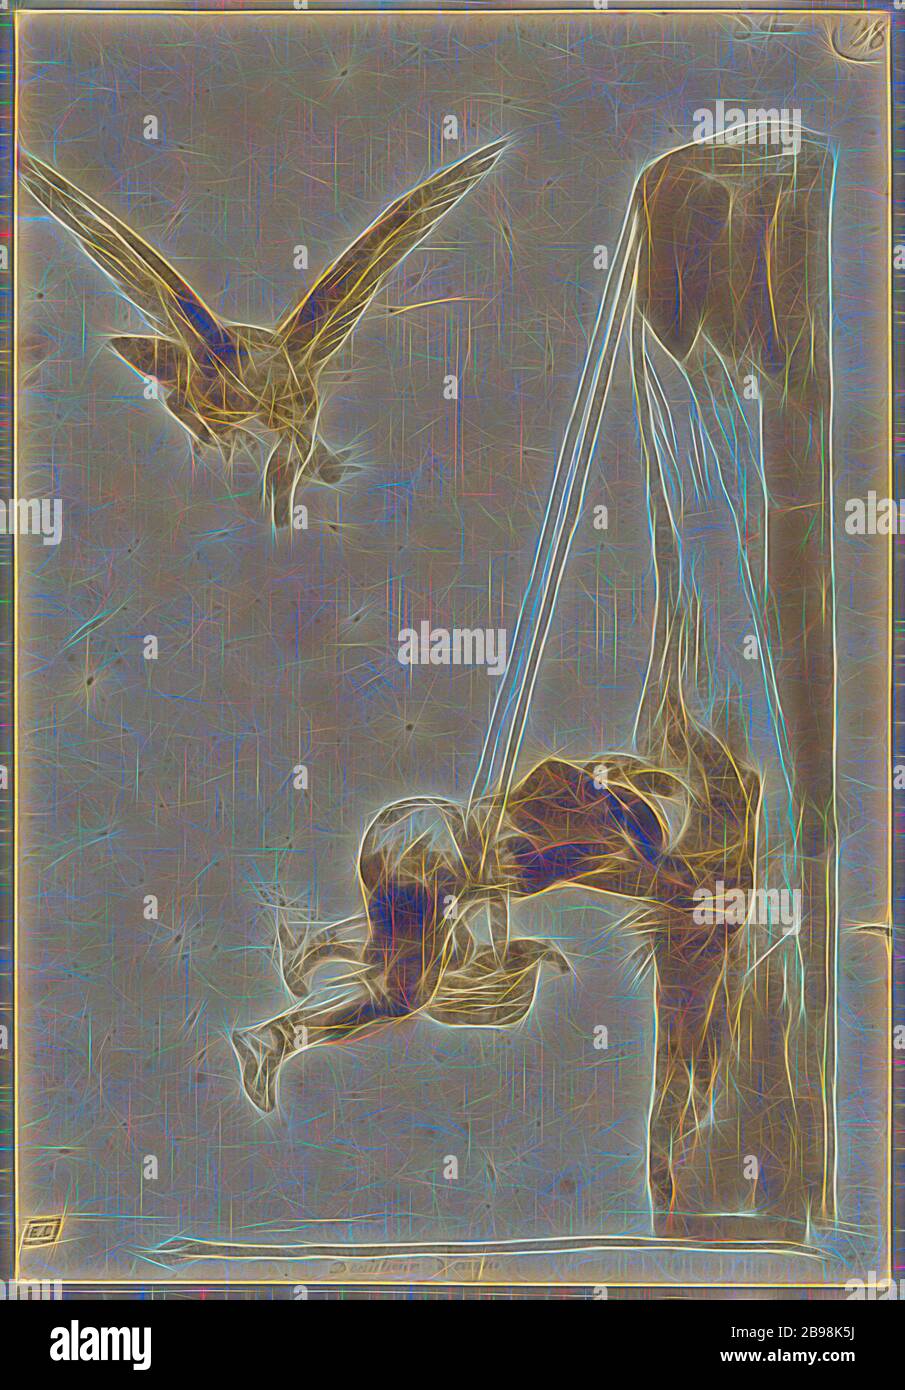 Il Cacciatore dell'aquila, Francisco José de Goya y Lucientes (Francisco de Goya) (spagnolo, 1746 - 1828), Spagna, circa 1812–1820, pennello e inchiostro marrone con lavaggio marrone, 20 × 14 cm (7 7/8 × 5 1/2 in.), Reimagined by Gibon, disegno di caldo allegro incandescente di luminosità e di luce raggi radianti. Arte classica reinventata con un tocco moderno. La fotografia ispirata al futurismo, abbracciando l'energia dinamica della tecnologia moderna, del movimento, della velocità e rivoluzionando la cultura. Foto Stock